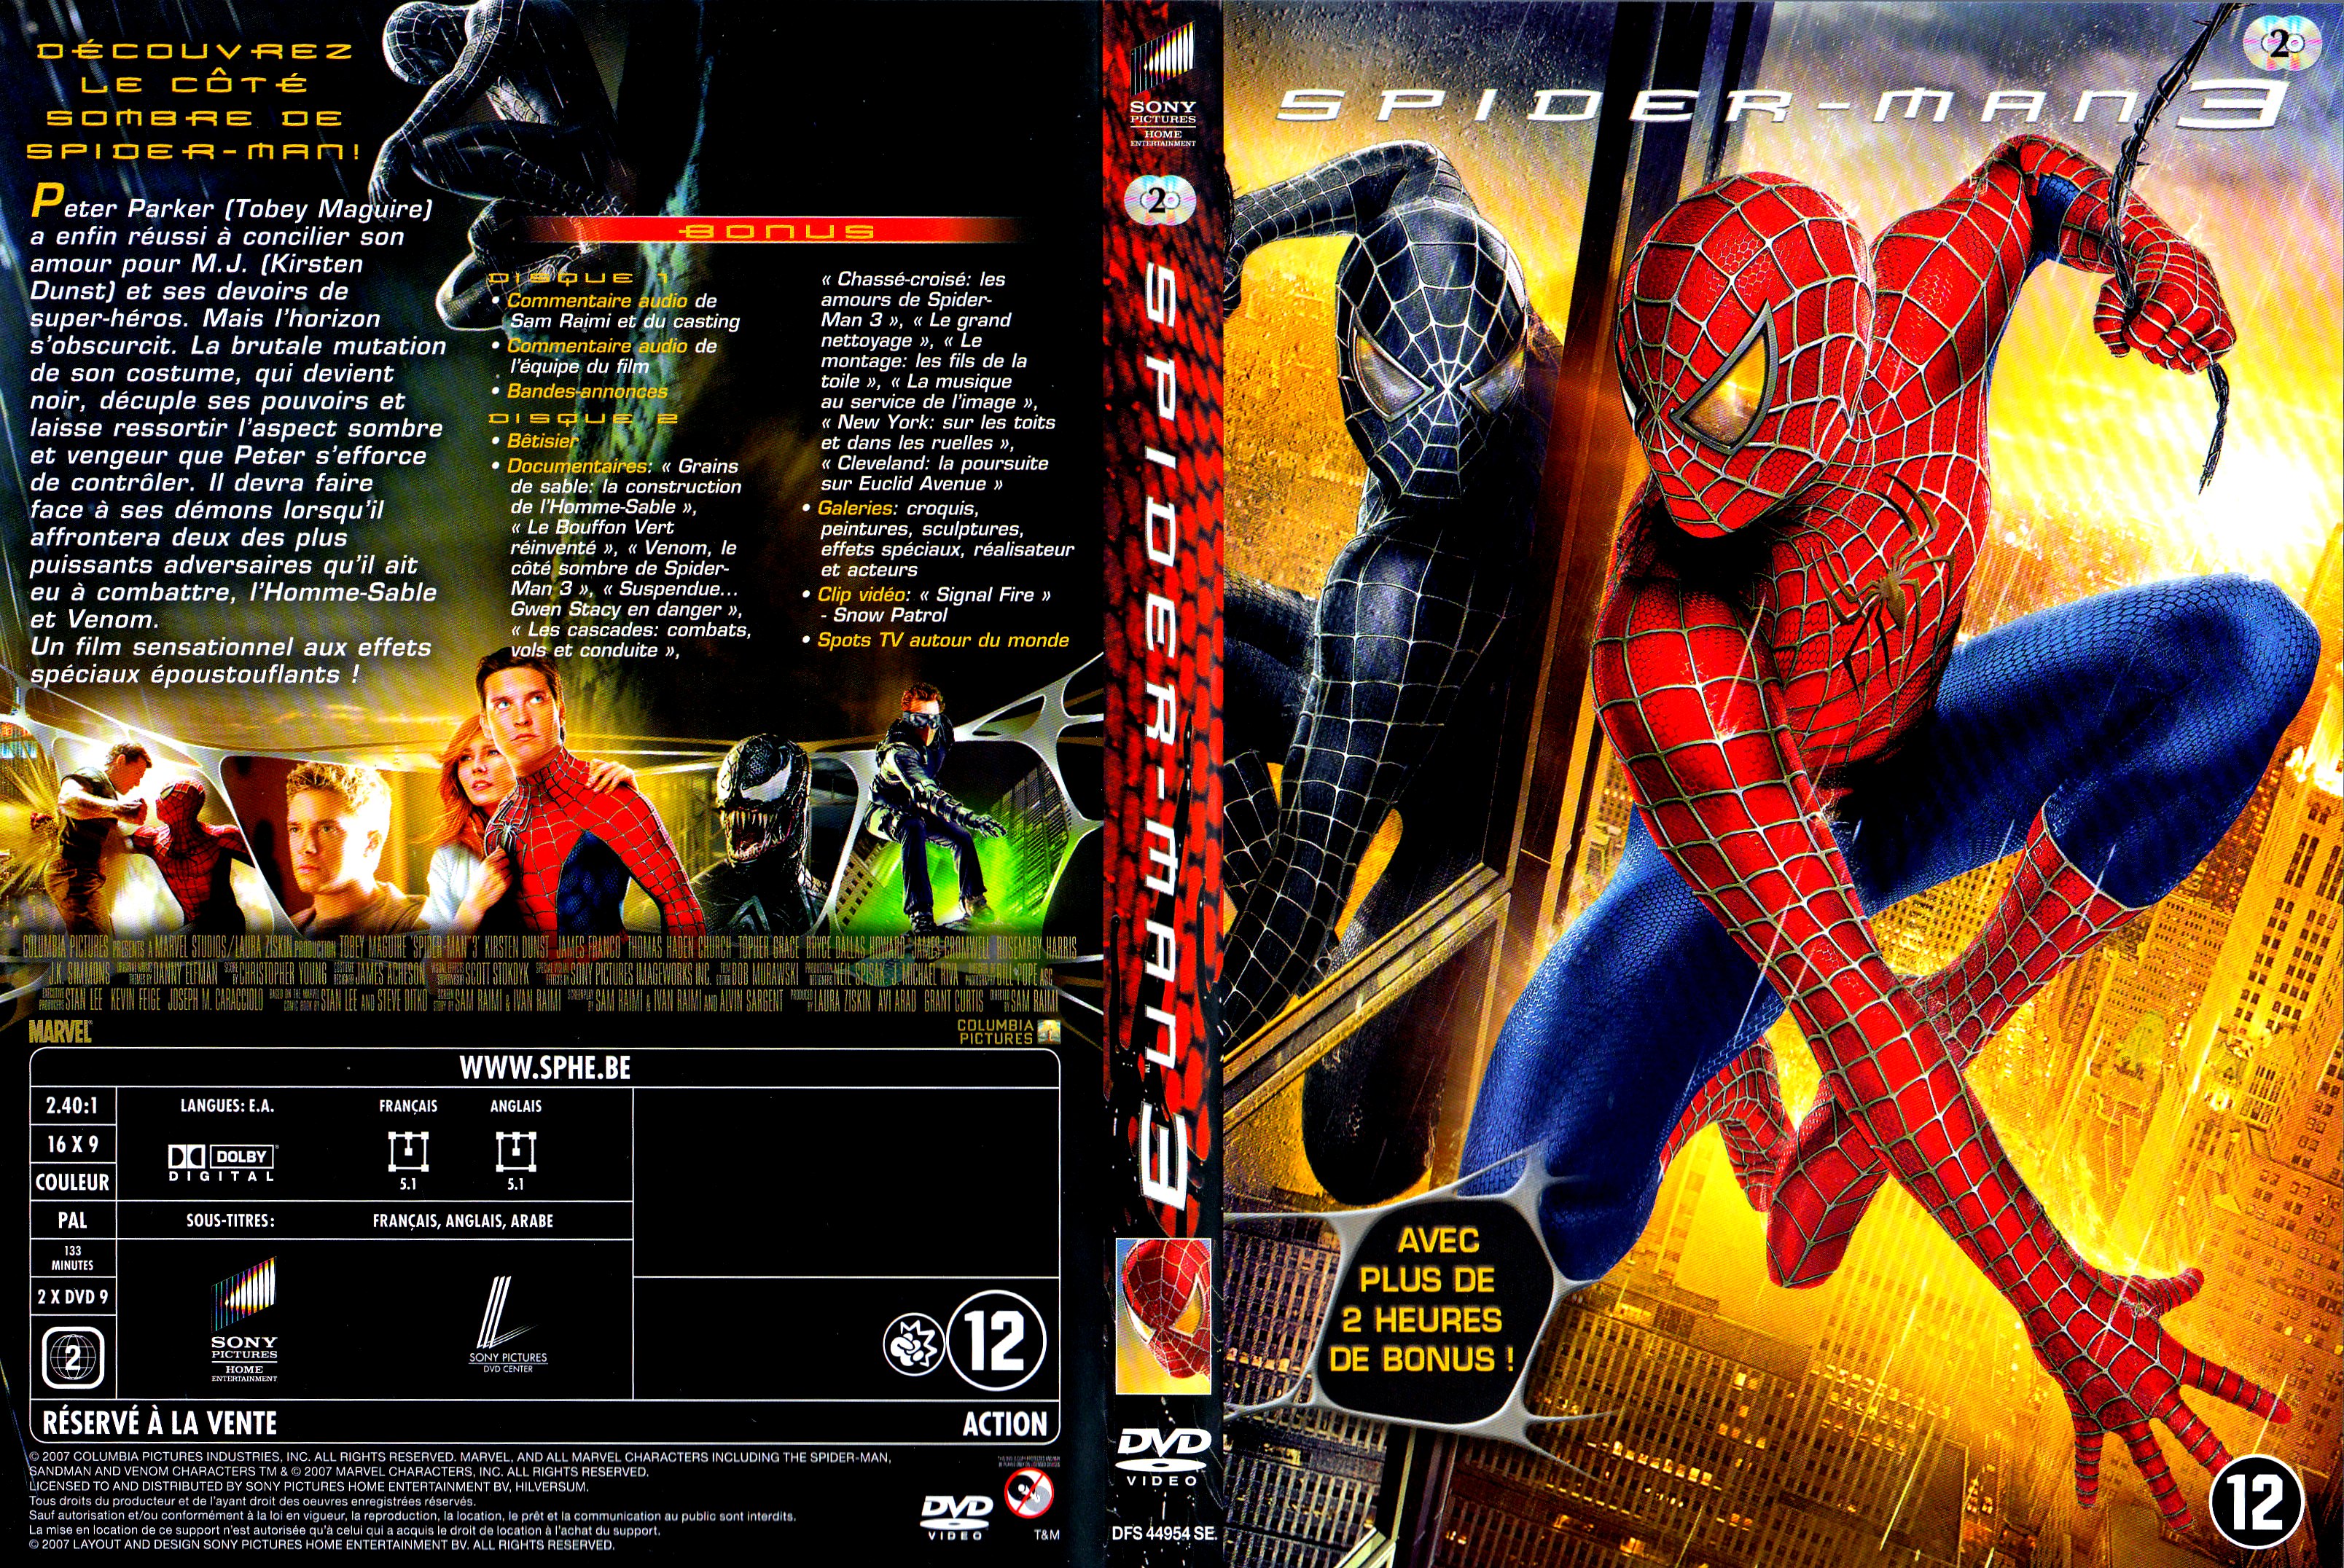 Jaquette DVD Spiderman 3 v4.